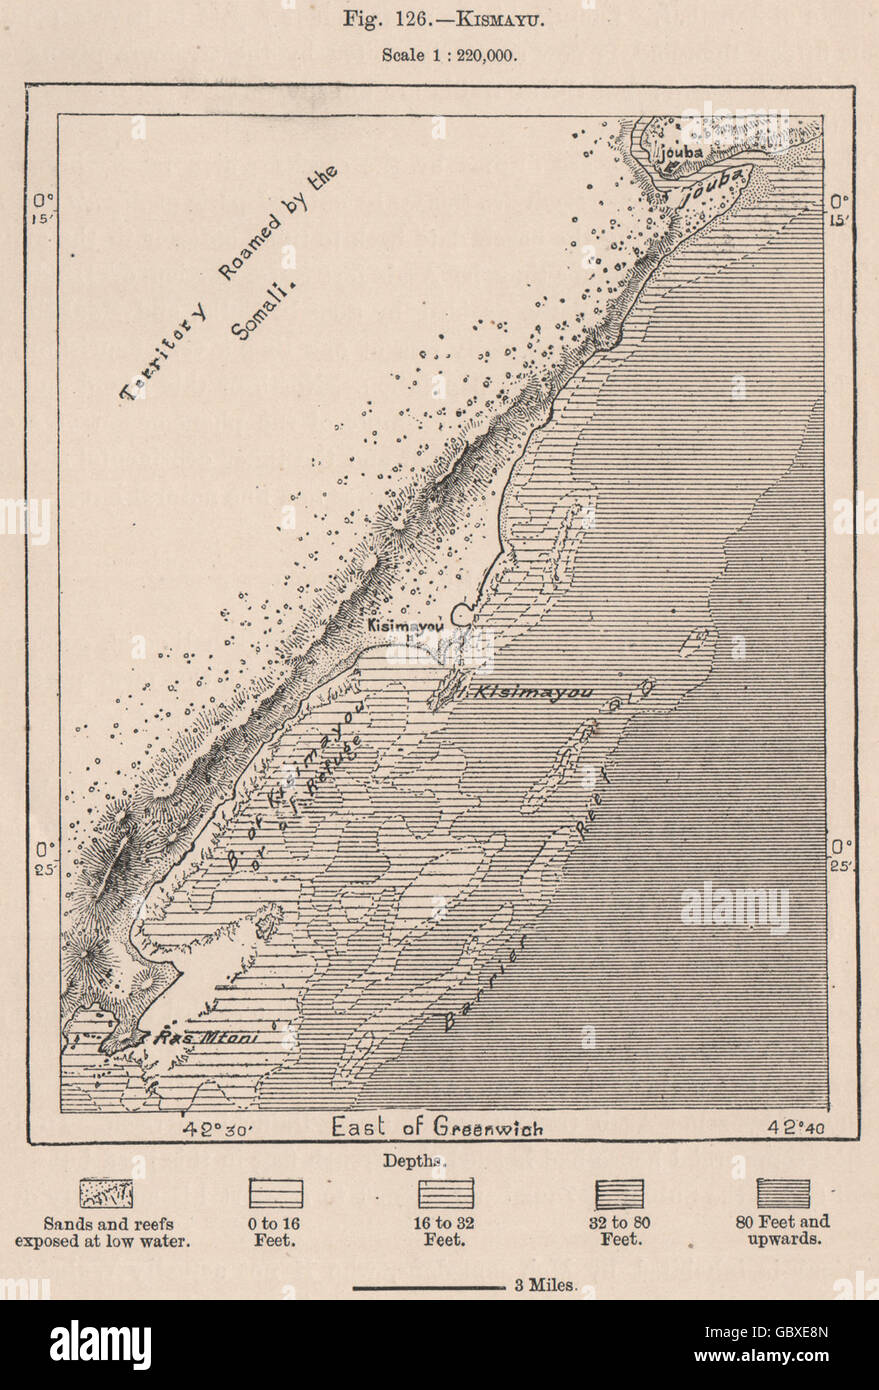 Kismayo. Somalia, 1885 antique map Stock Photo